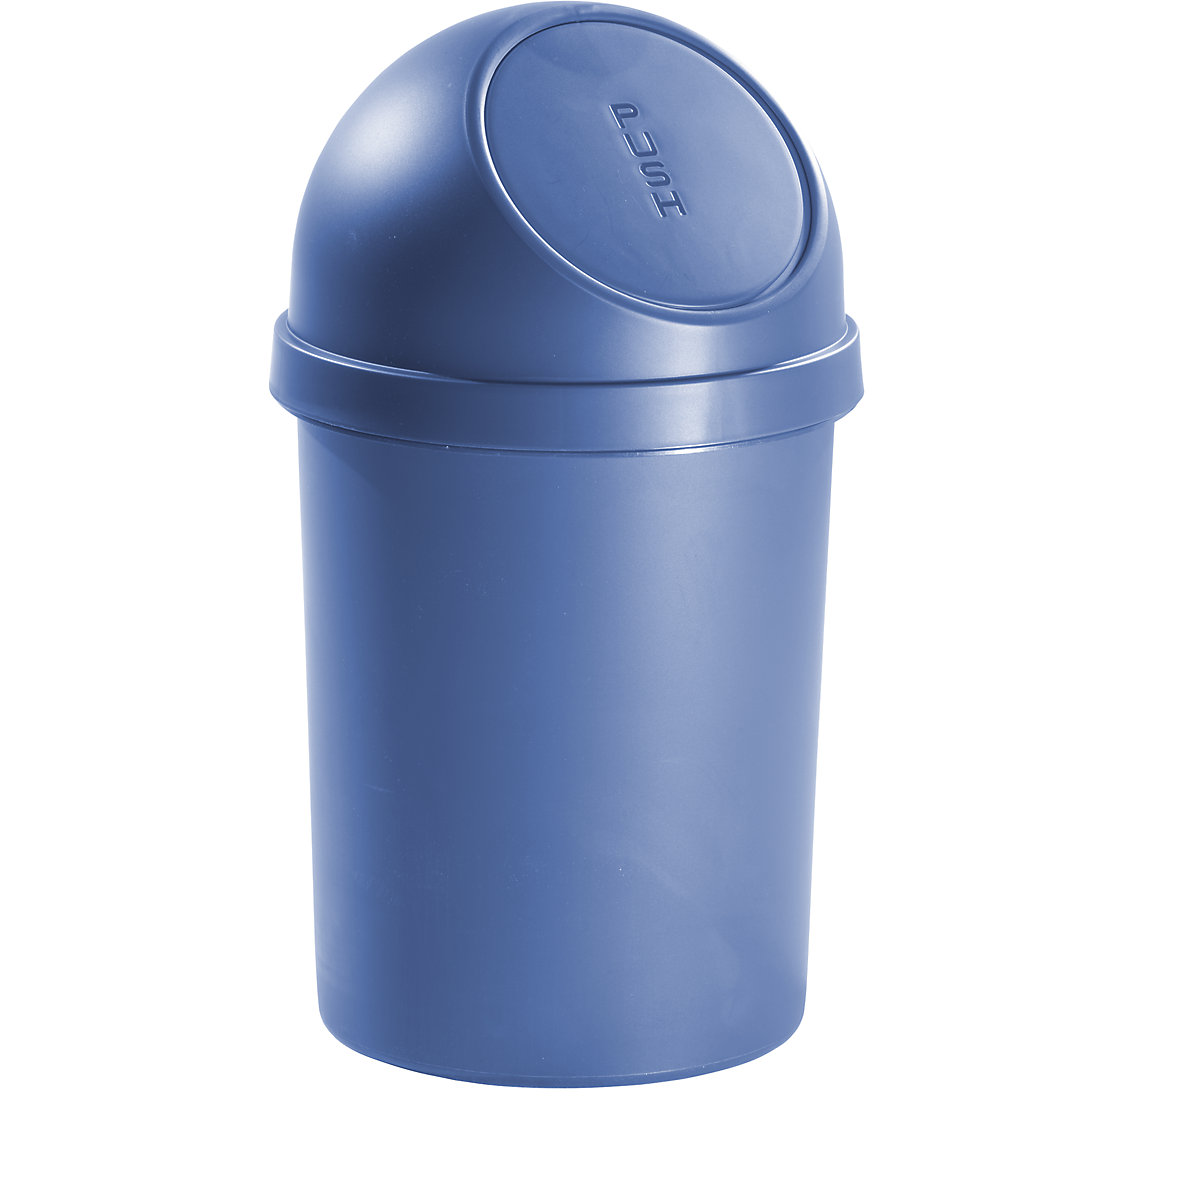 helit – Samozavírací nádoba na odpadky z plastu, objem 45 l, v x Ø 700 x 400 mm, modrá, bal.j. 2 ks